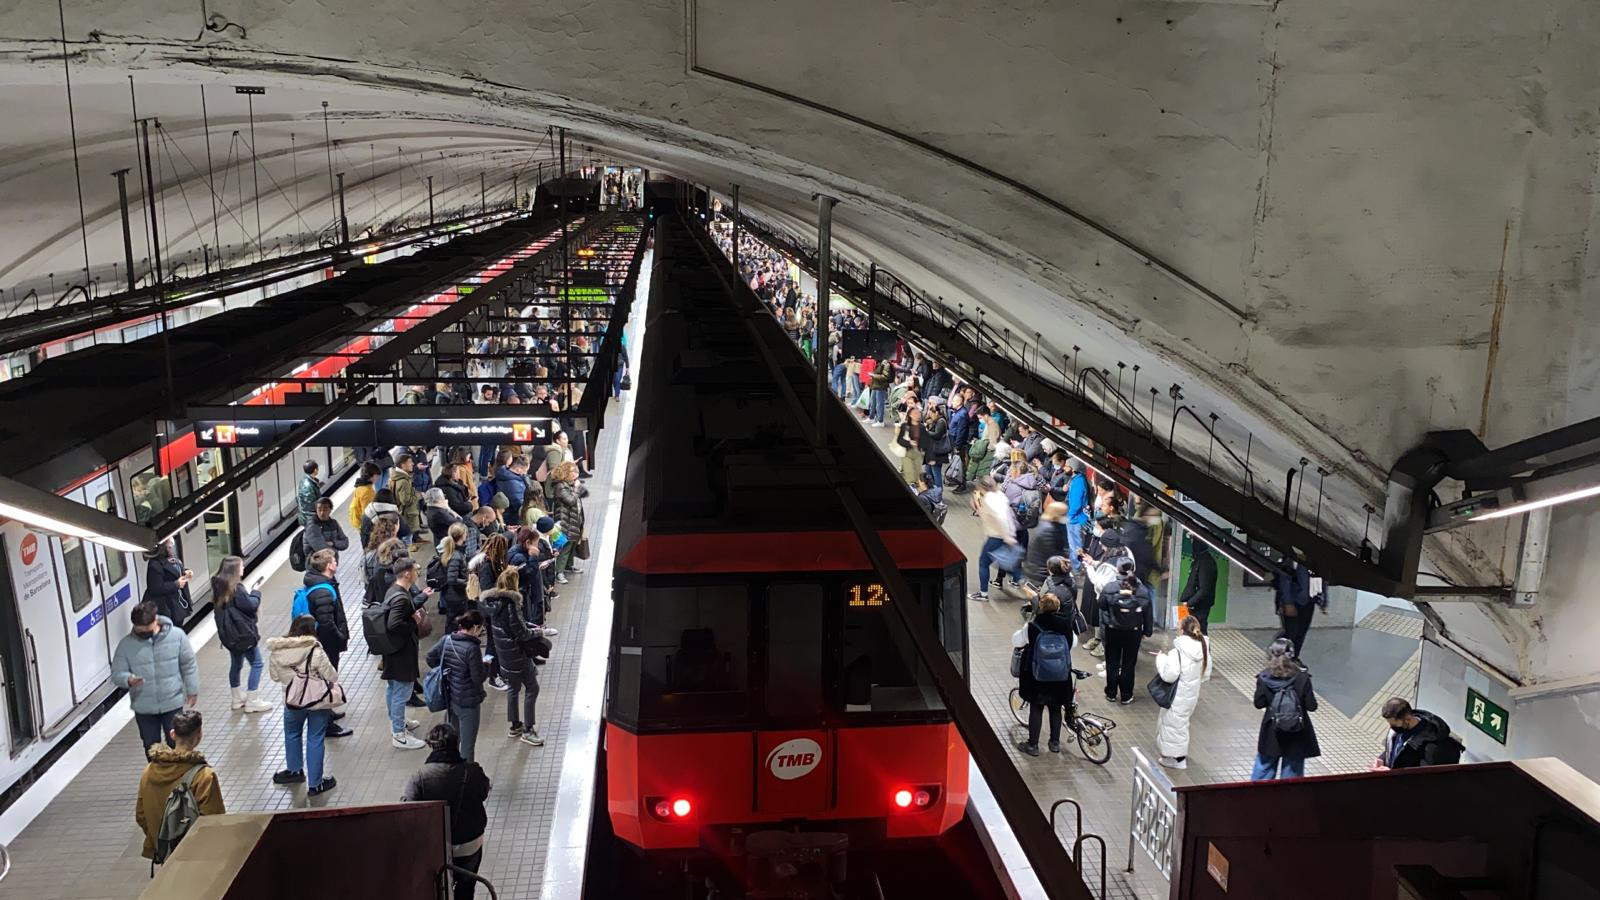 Afectaciones en el metro de Barcelona por una incidencia / MA